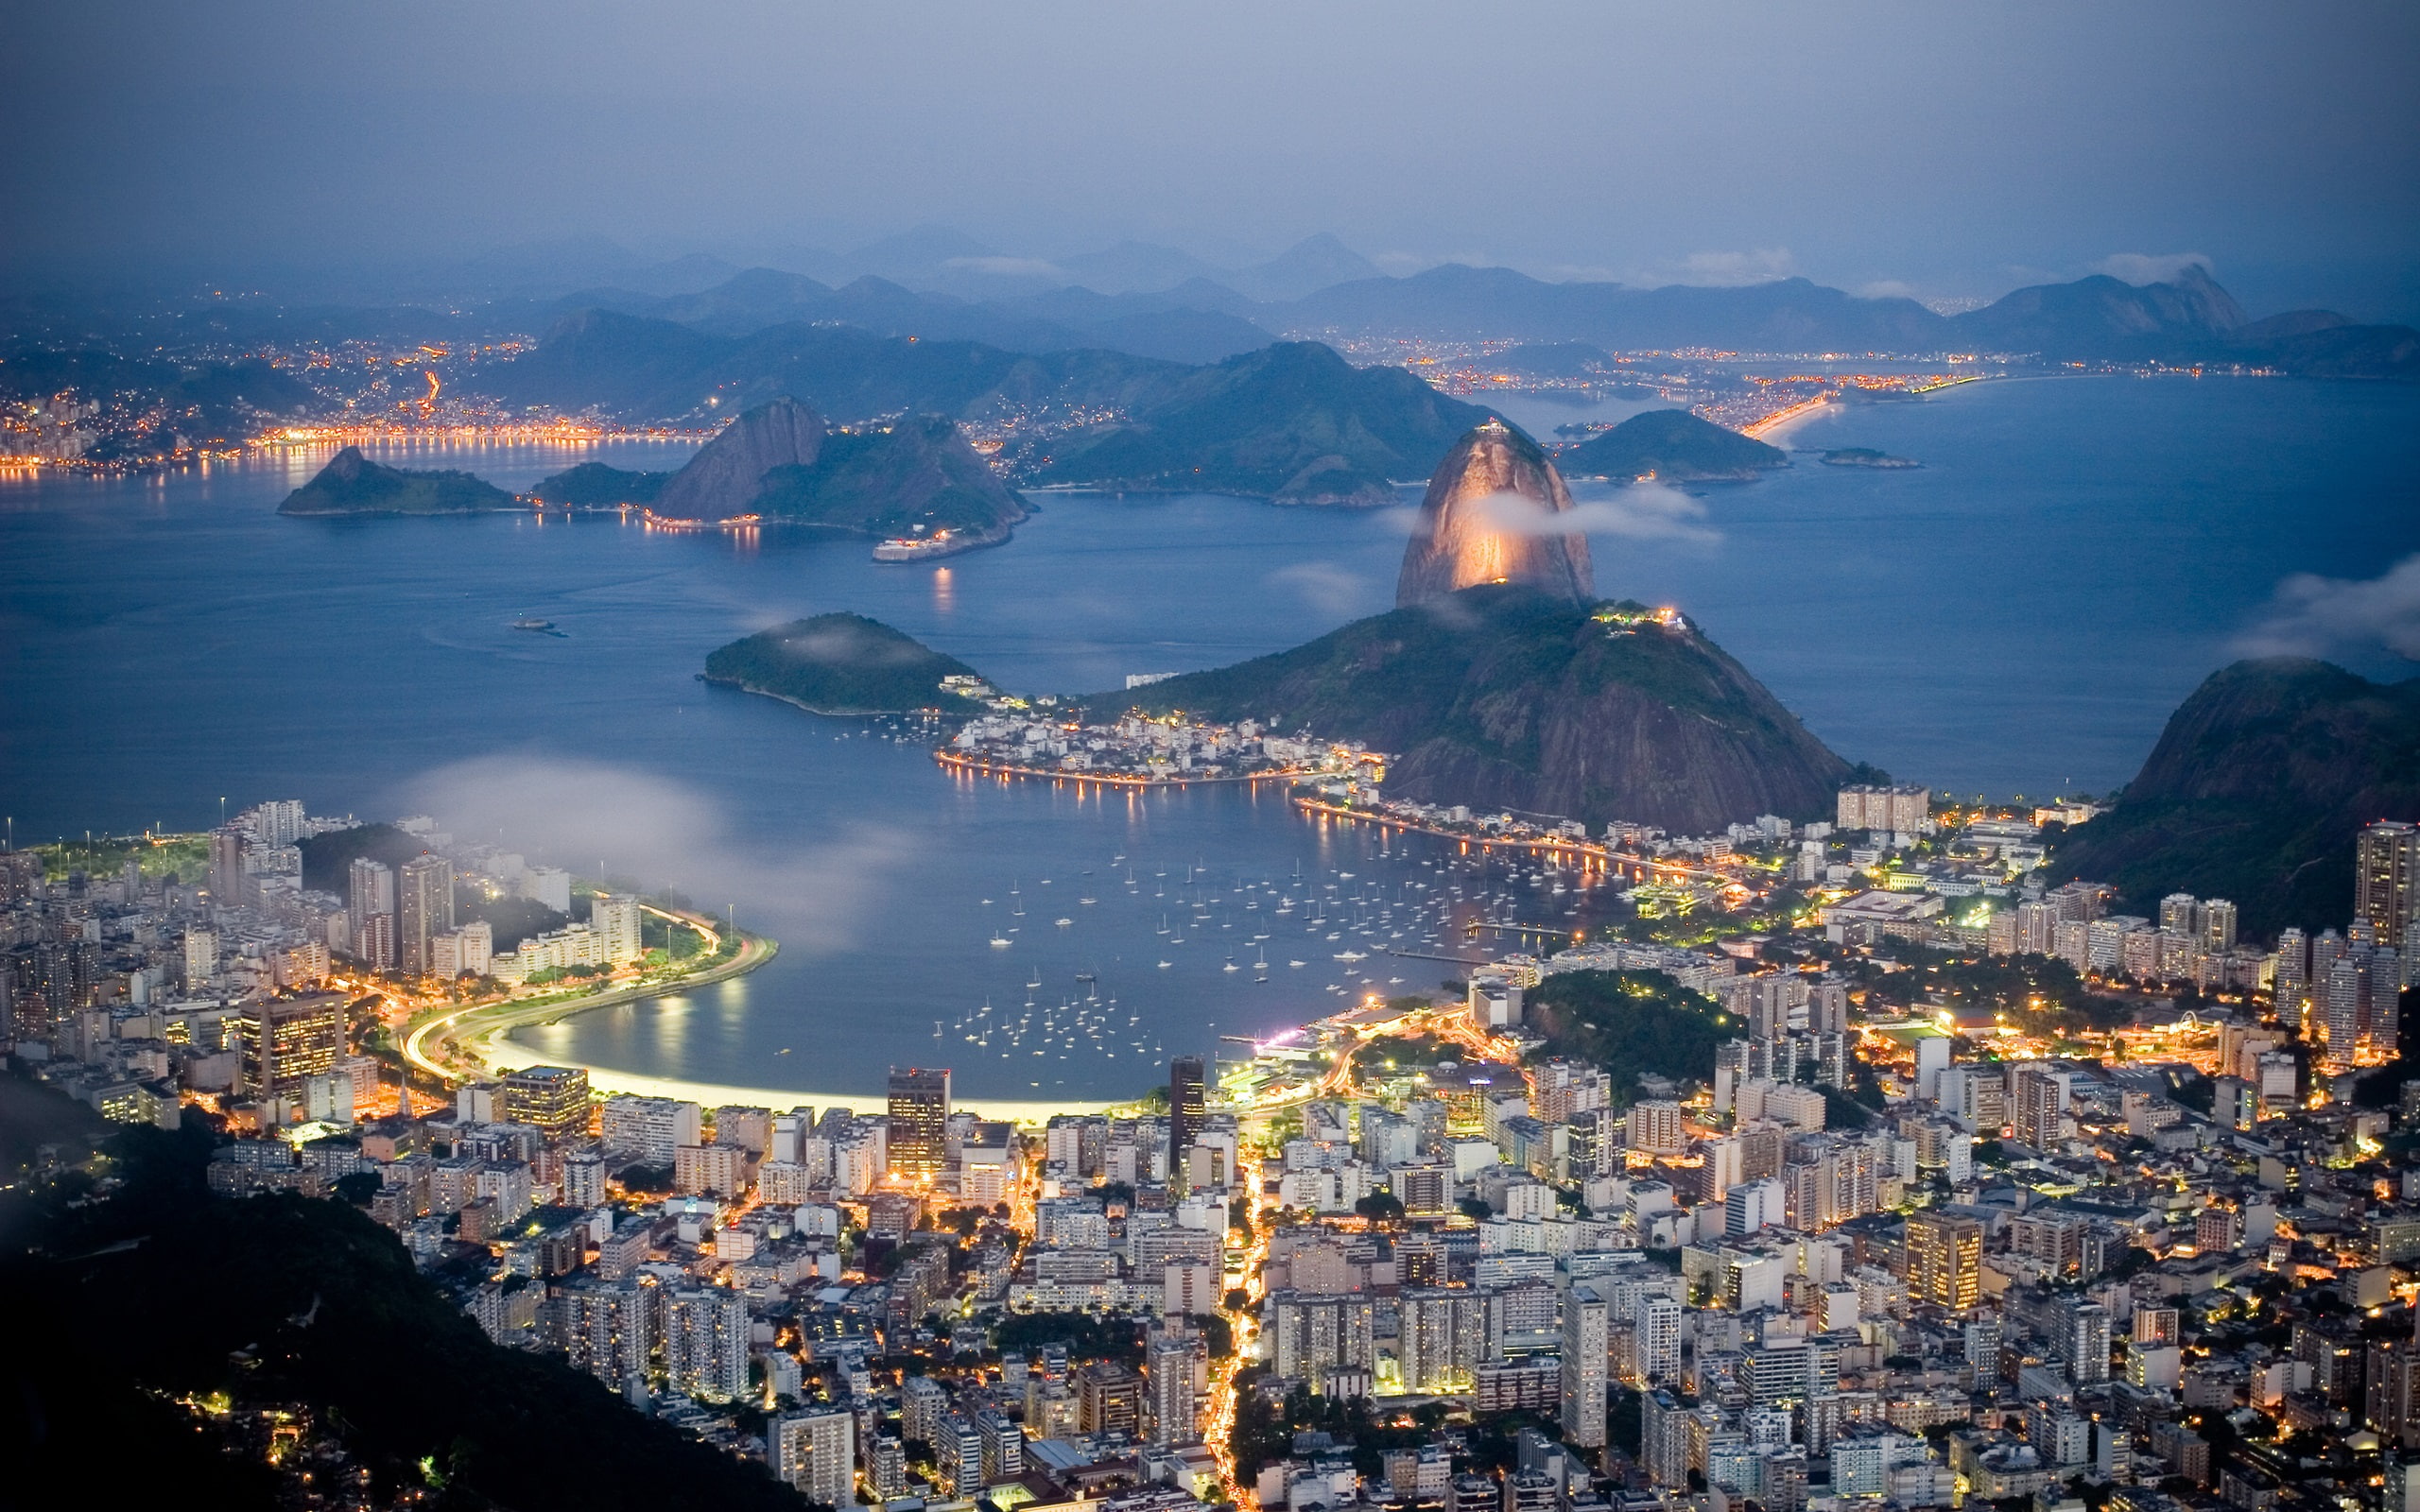 Brazil, Rio de Janeiro, evening, sea, lights, coast, houses, mountains